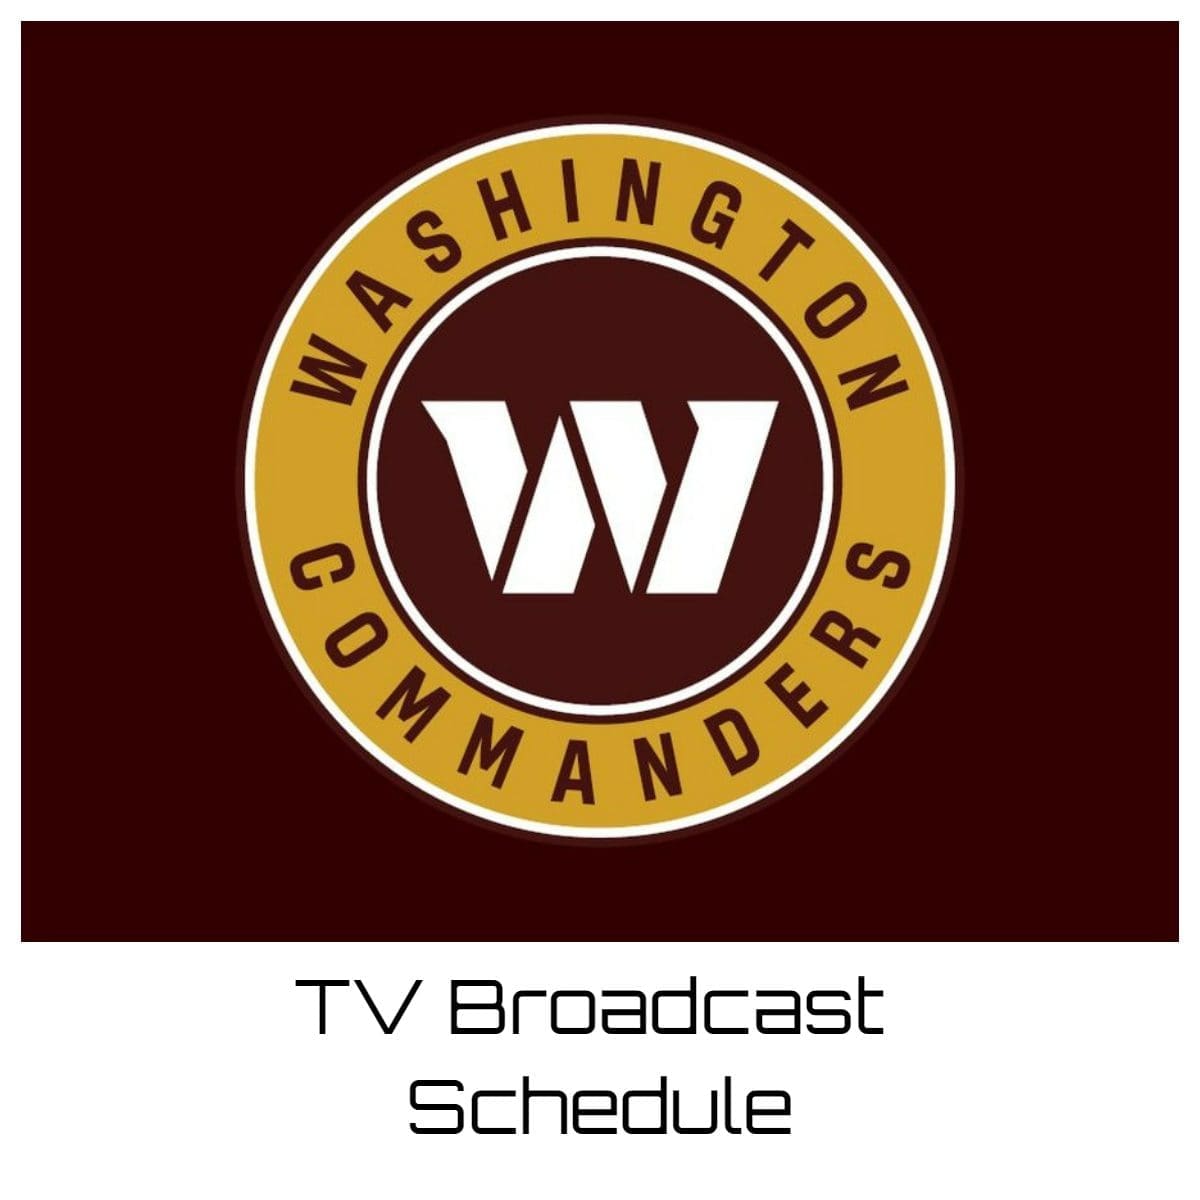 Washington Commanders TV Broadcast Schedule